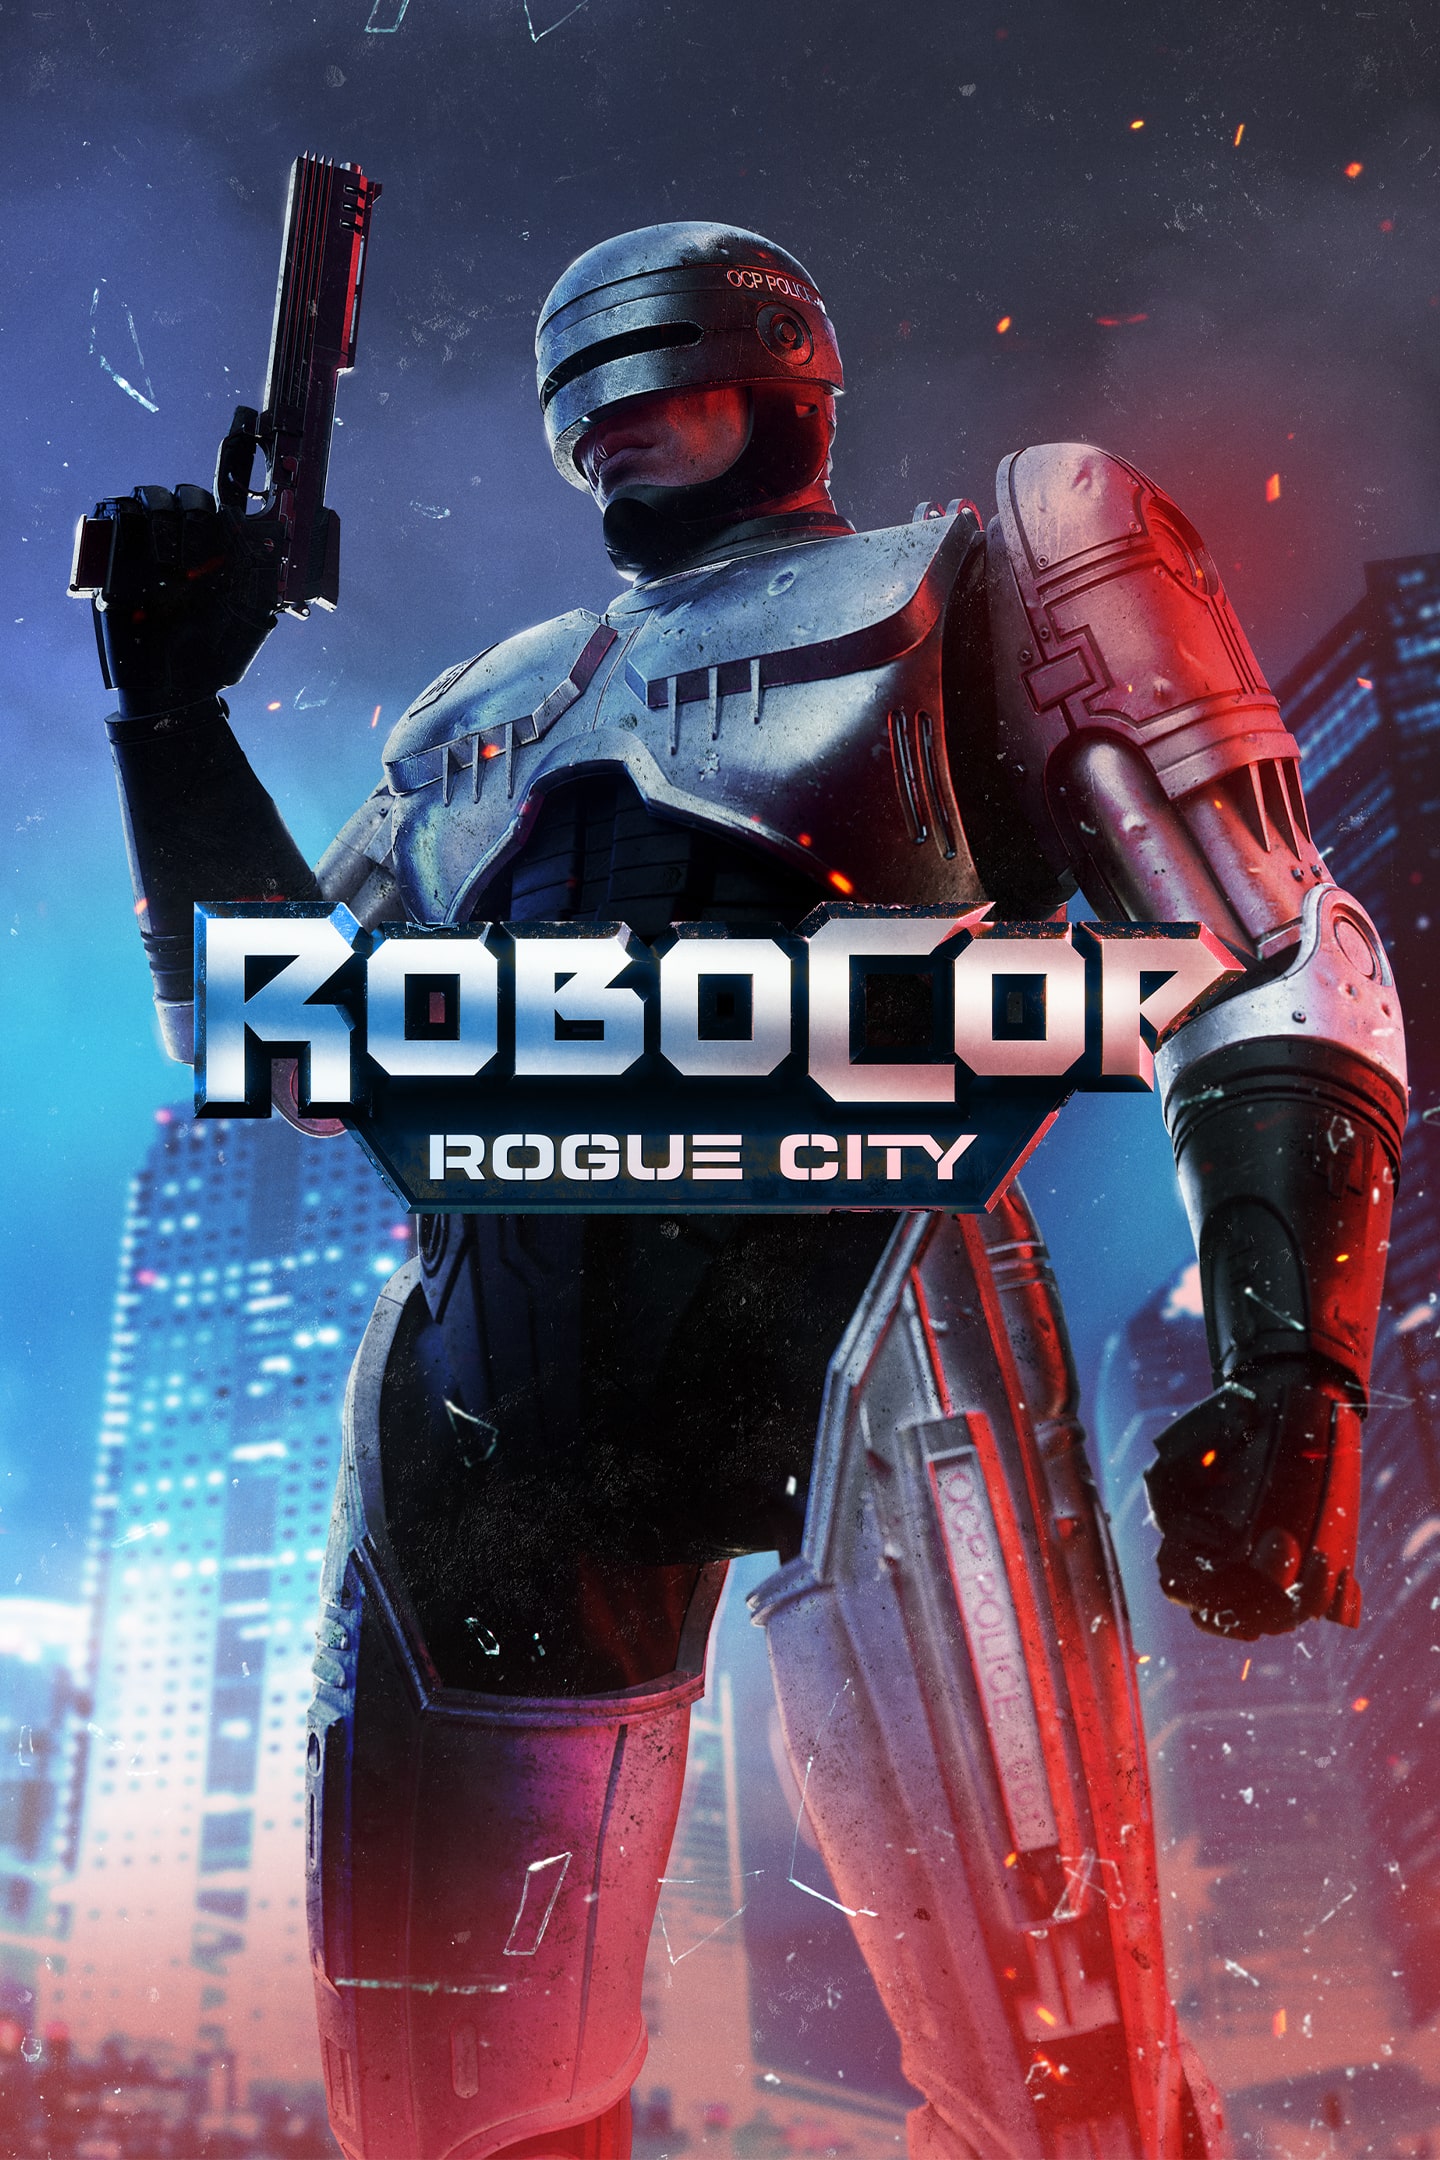 ▷ Chollo RoboCop: Rogue City para PS5 por sólo 33,99€ con envío gratis  (-33%)